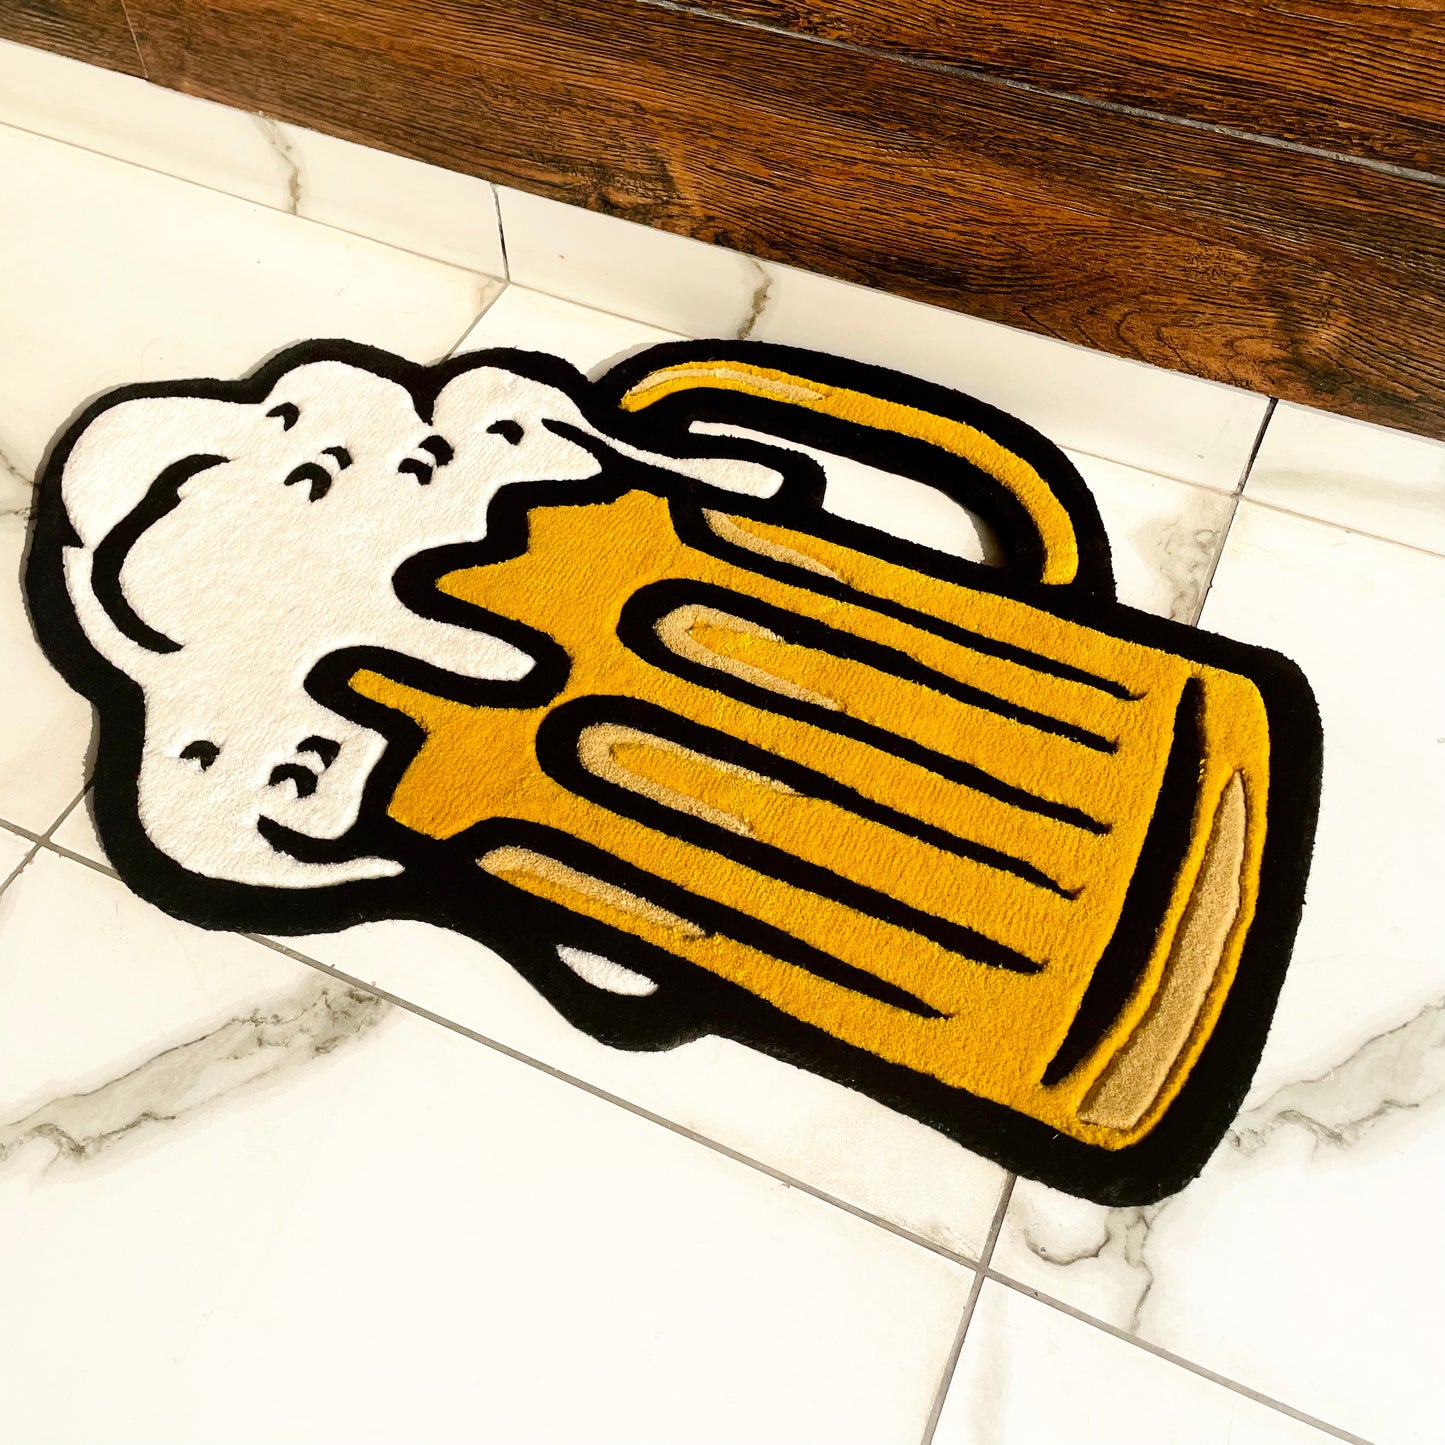 Beer mug rug side view